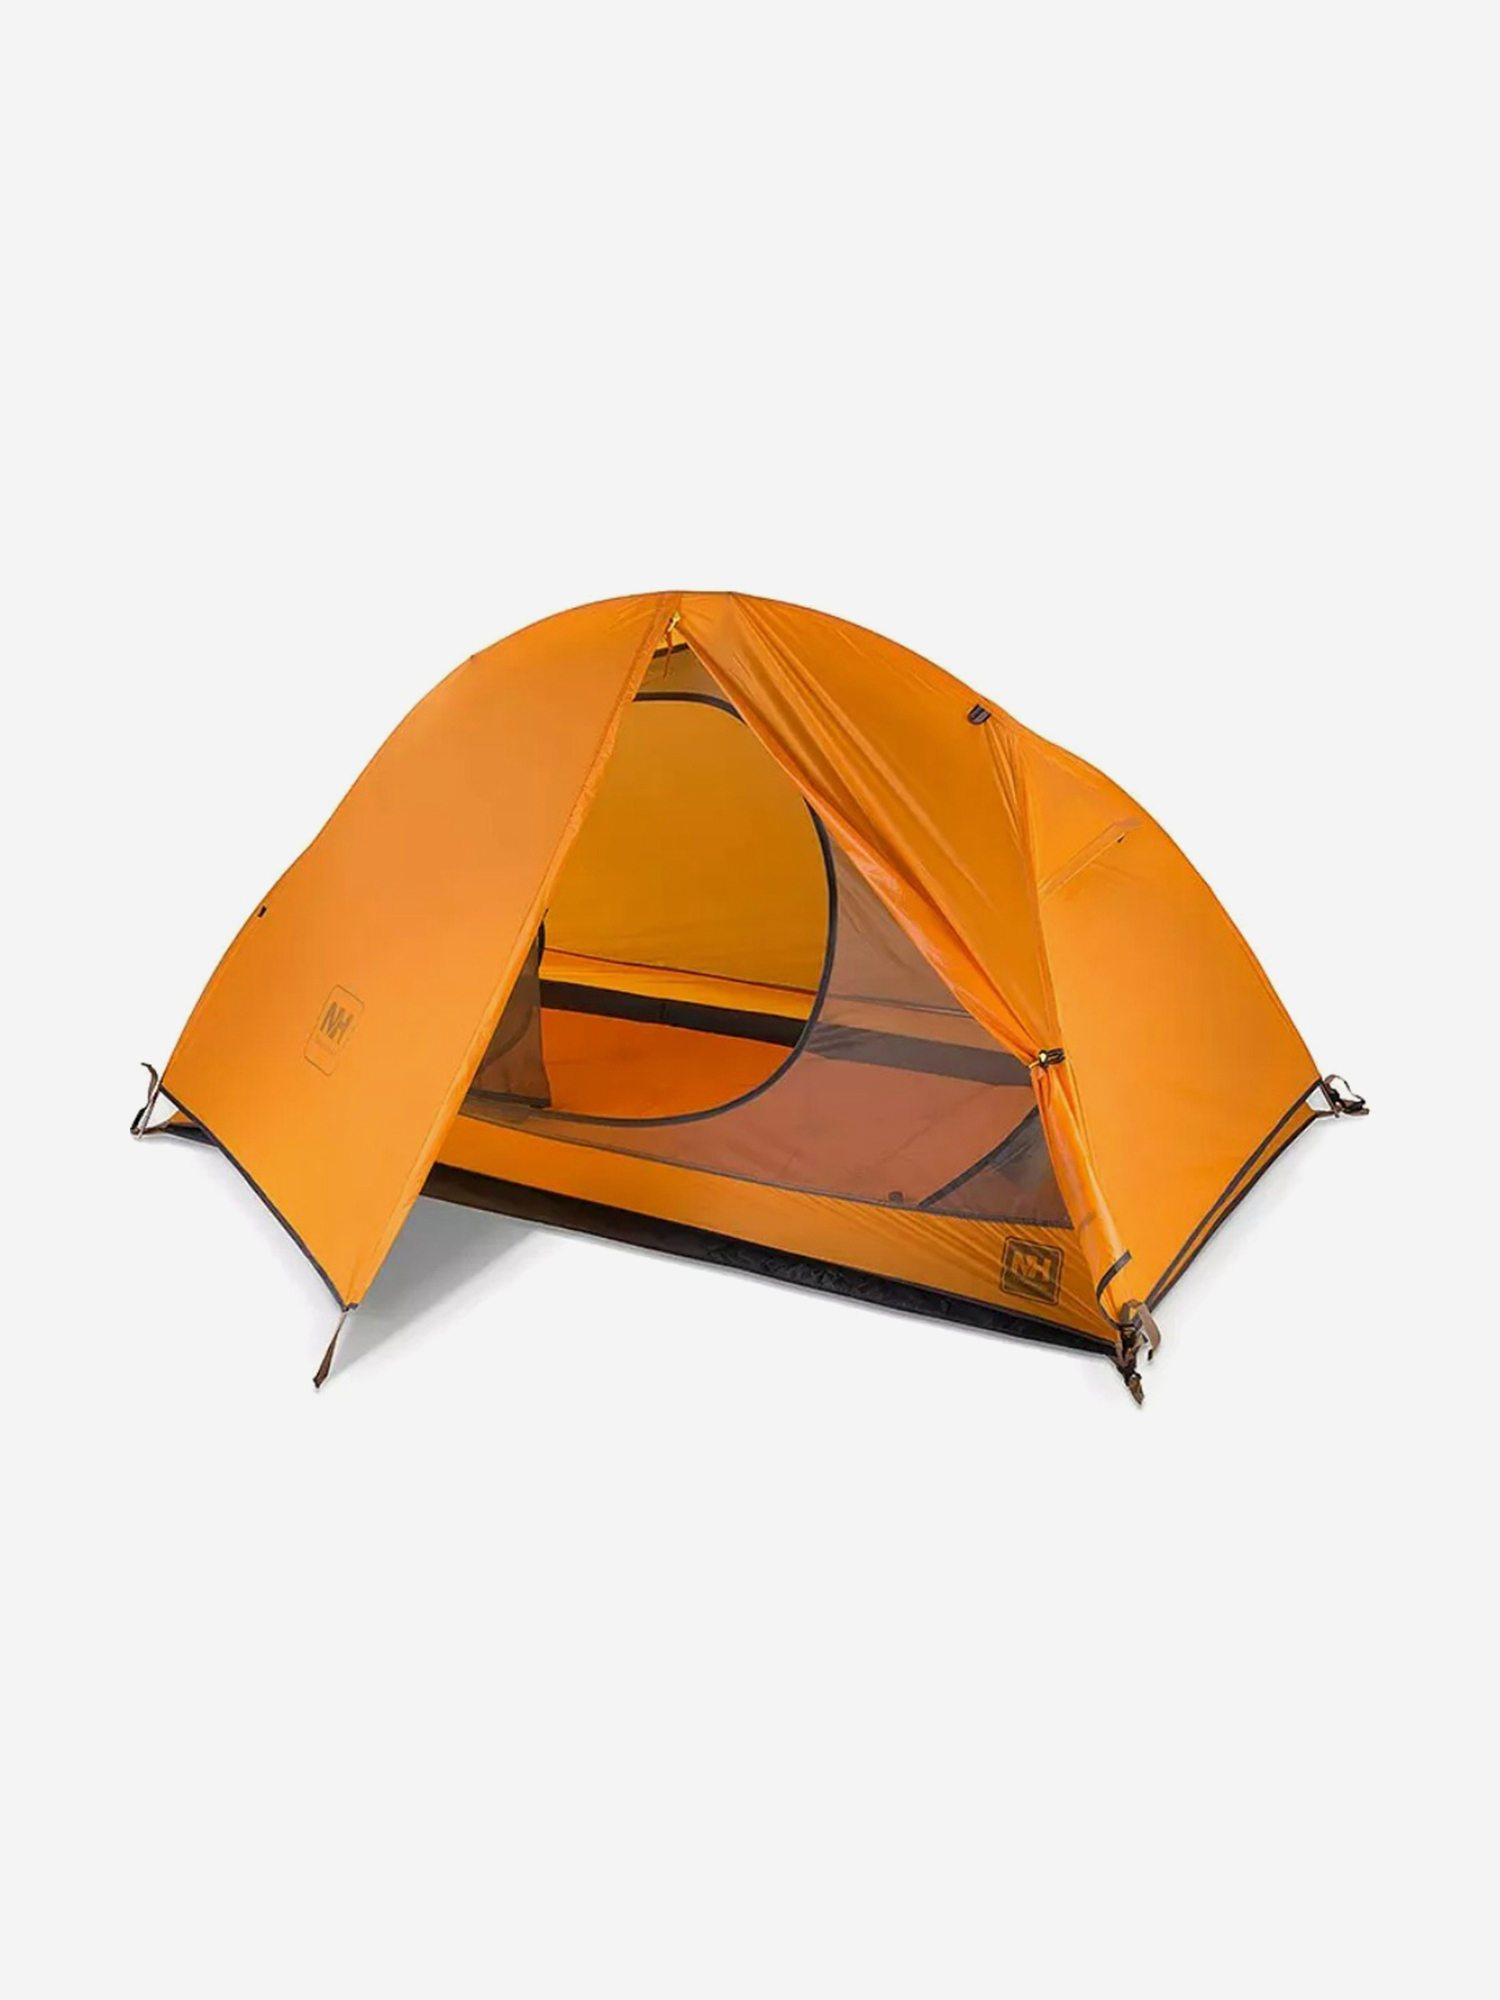 Палатка Naturehike Cycling Si 1-местная, алюминиевый каркас, сверхлегкая, оранжевый, Оранжевый палатка naturehike star river si 2 местная алюминиевый каркас сверхлегкая оранжевая оранжевый